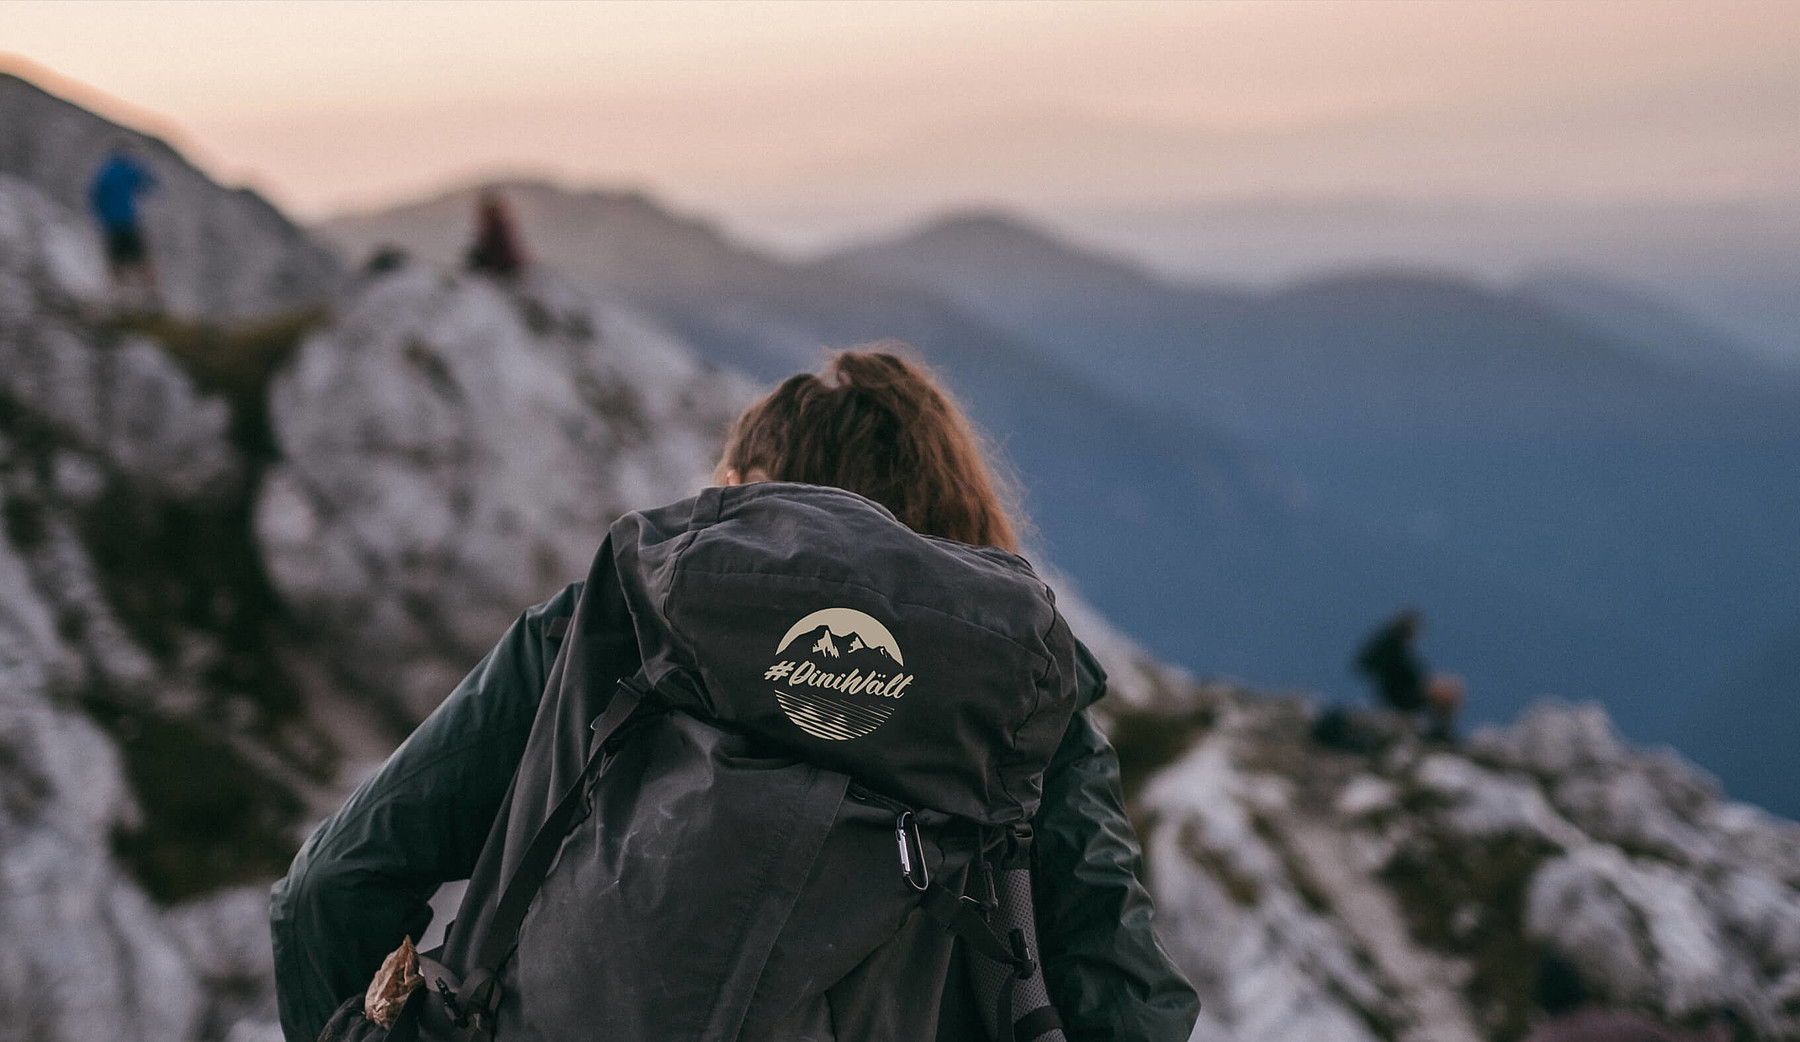 Eine Frau in den Bergen trägt einen Rucksack mit dem Label #DiniWält der Jungfrau-Region.